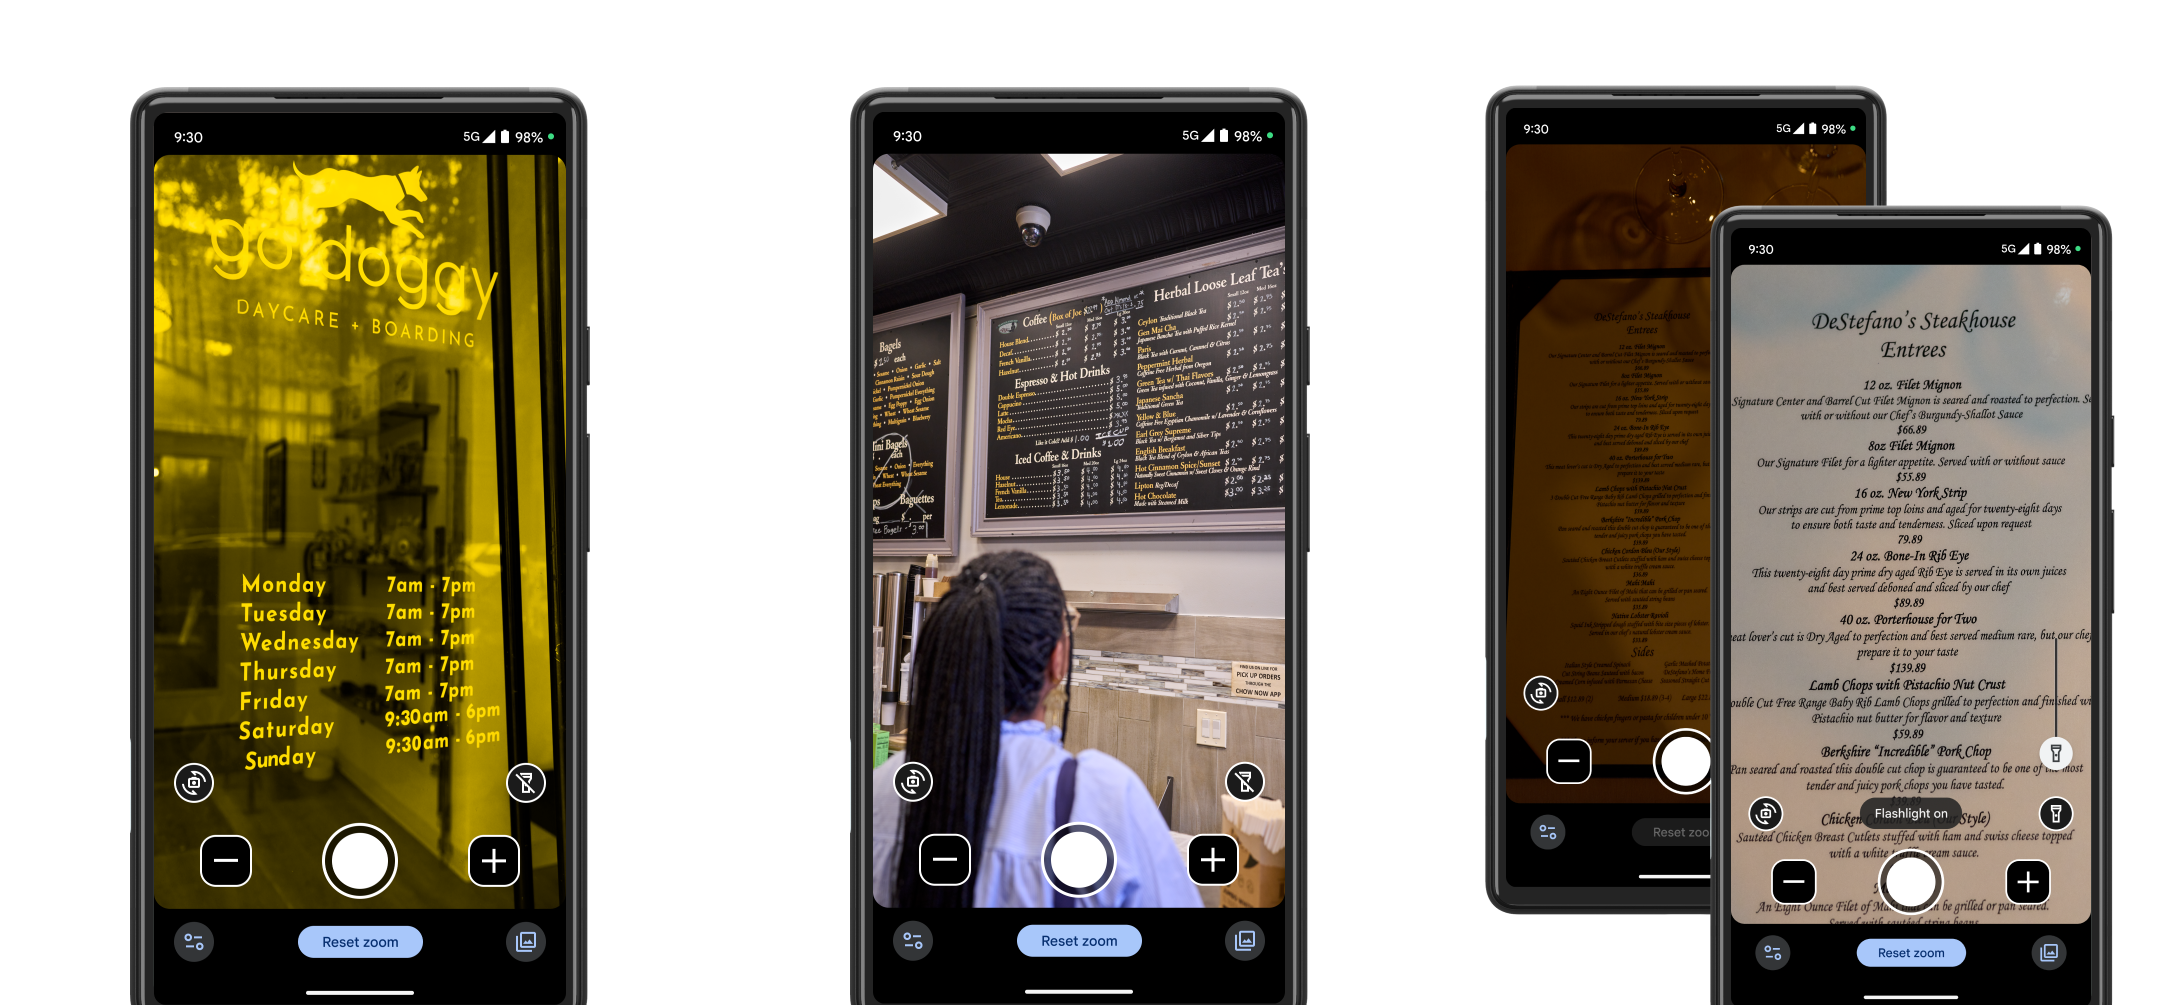 Google has released the Magnifier app for Pixel smartphones